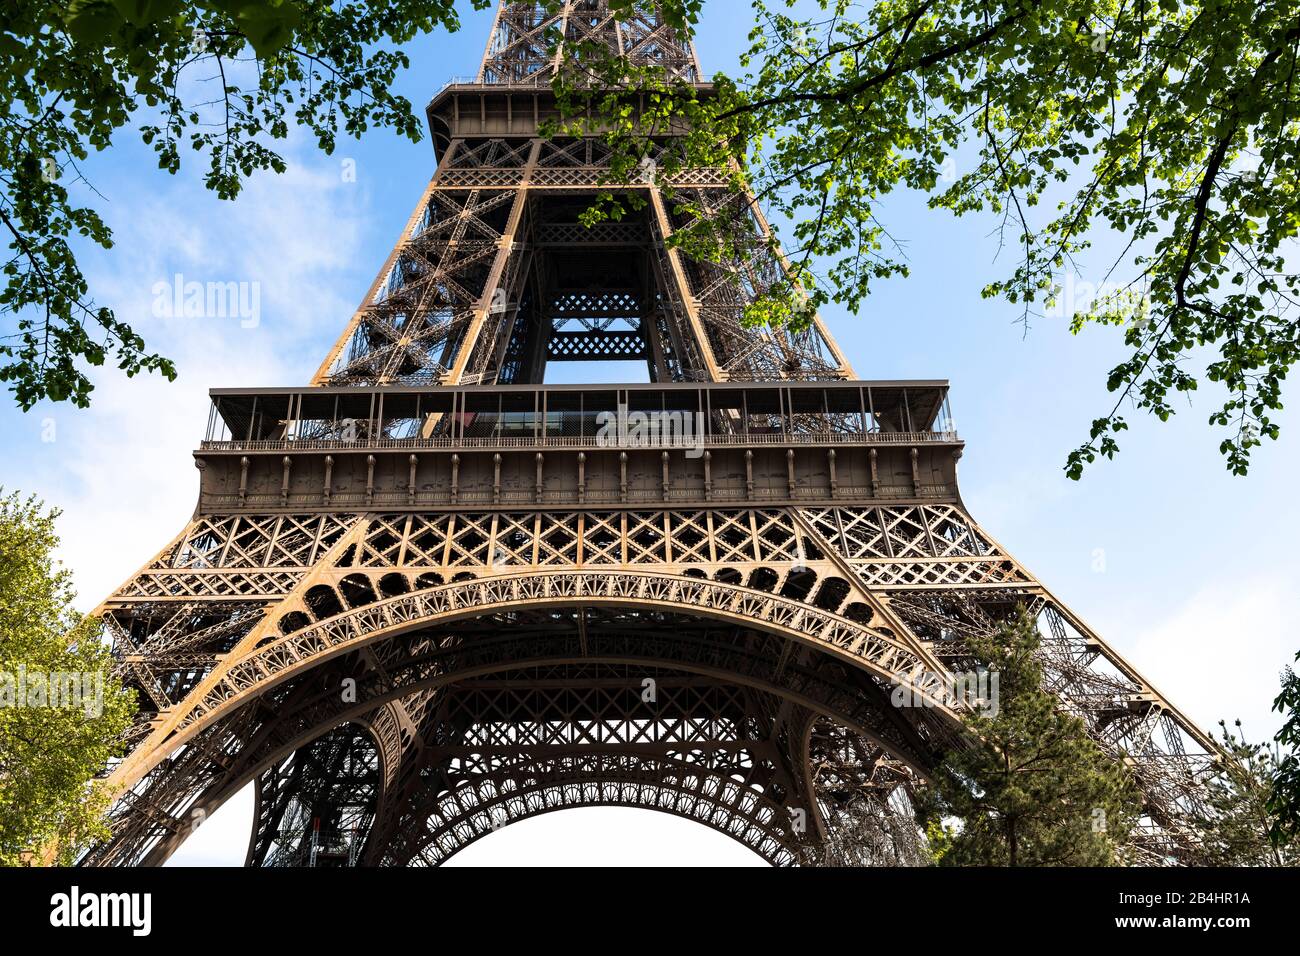 Blick durch Laubbäume auf die untere Besucherebene des Eiffelturms, Paris, Frankreich, Europa Banque D'Images